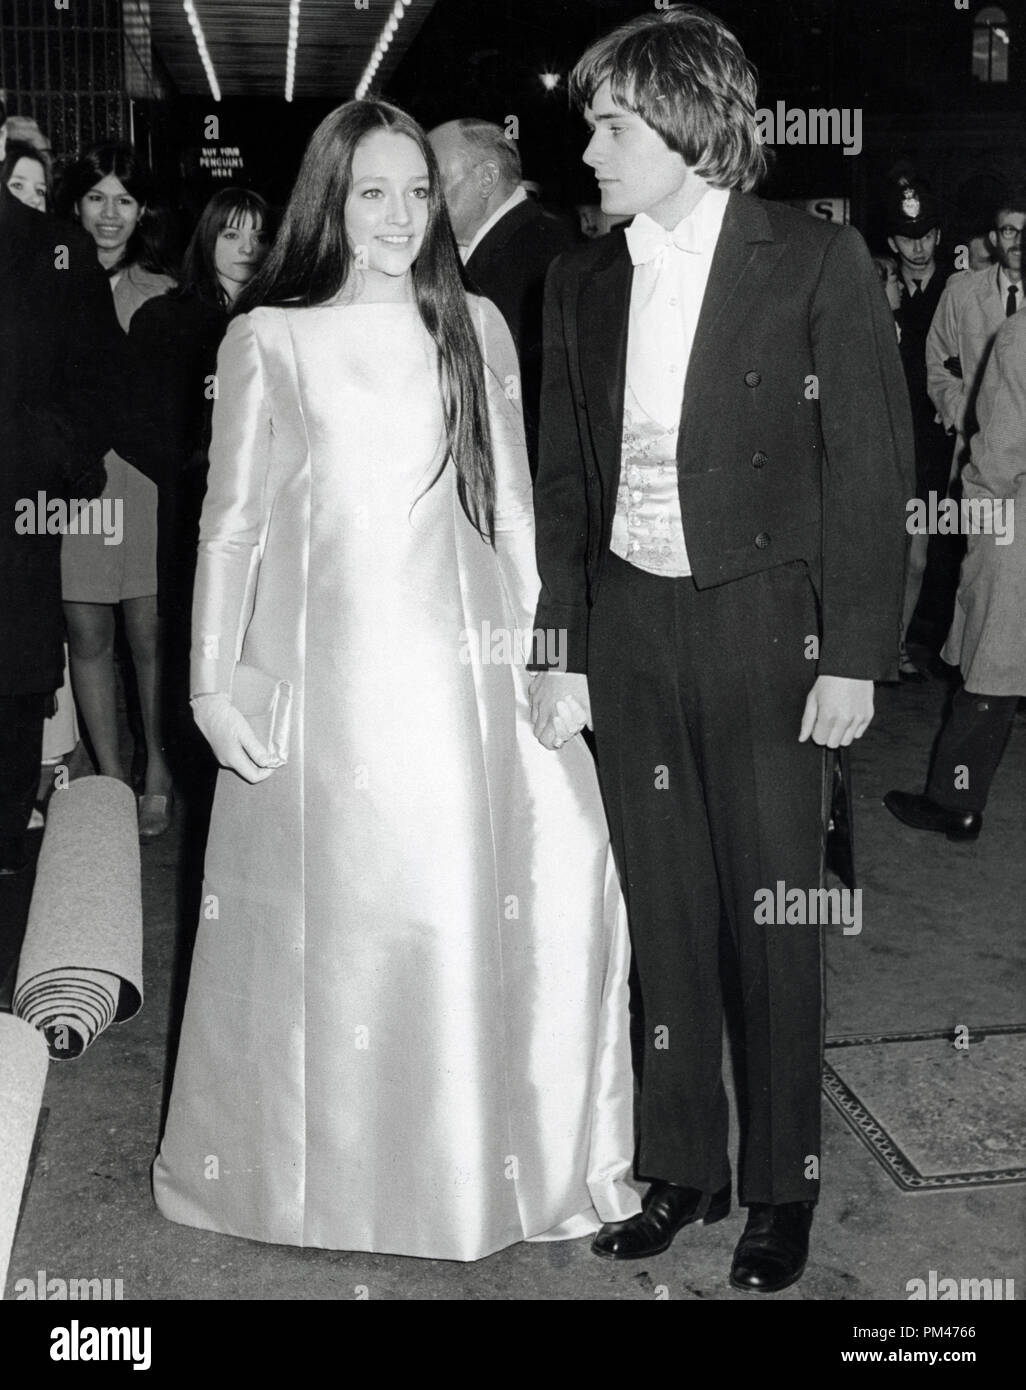 Olivia Hussey et Leonard Whiting arrivant à la première de Roméo et Juliette, le 5 mars 1968. Référence de fichier #  1106 003THA © CCR /Le Hollywood Archive - Tous droits réservés Banque D'Images